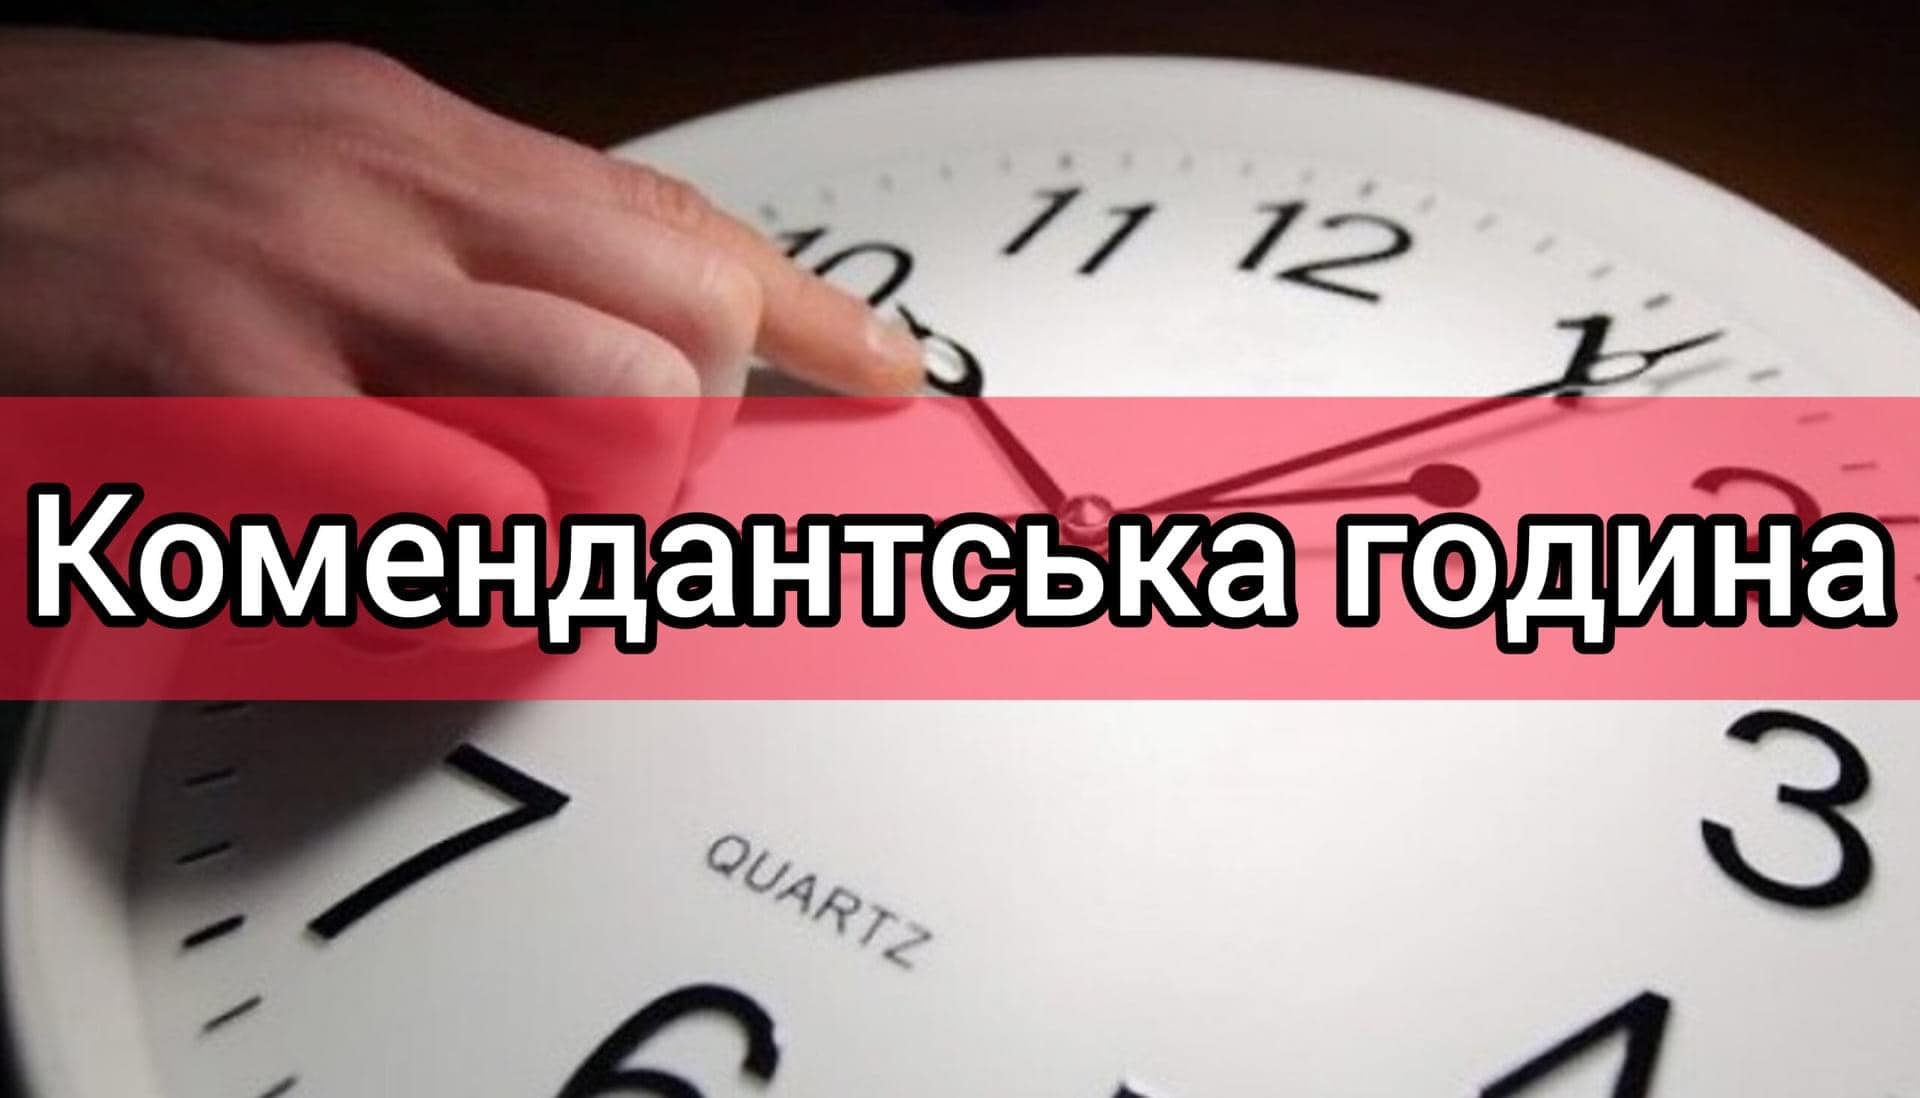 З 1 грудня комендантська година на Миколаївщині, окрім декількох громад, буде з 00:00 до 05:00 (ДОКУМЕНТ) 13